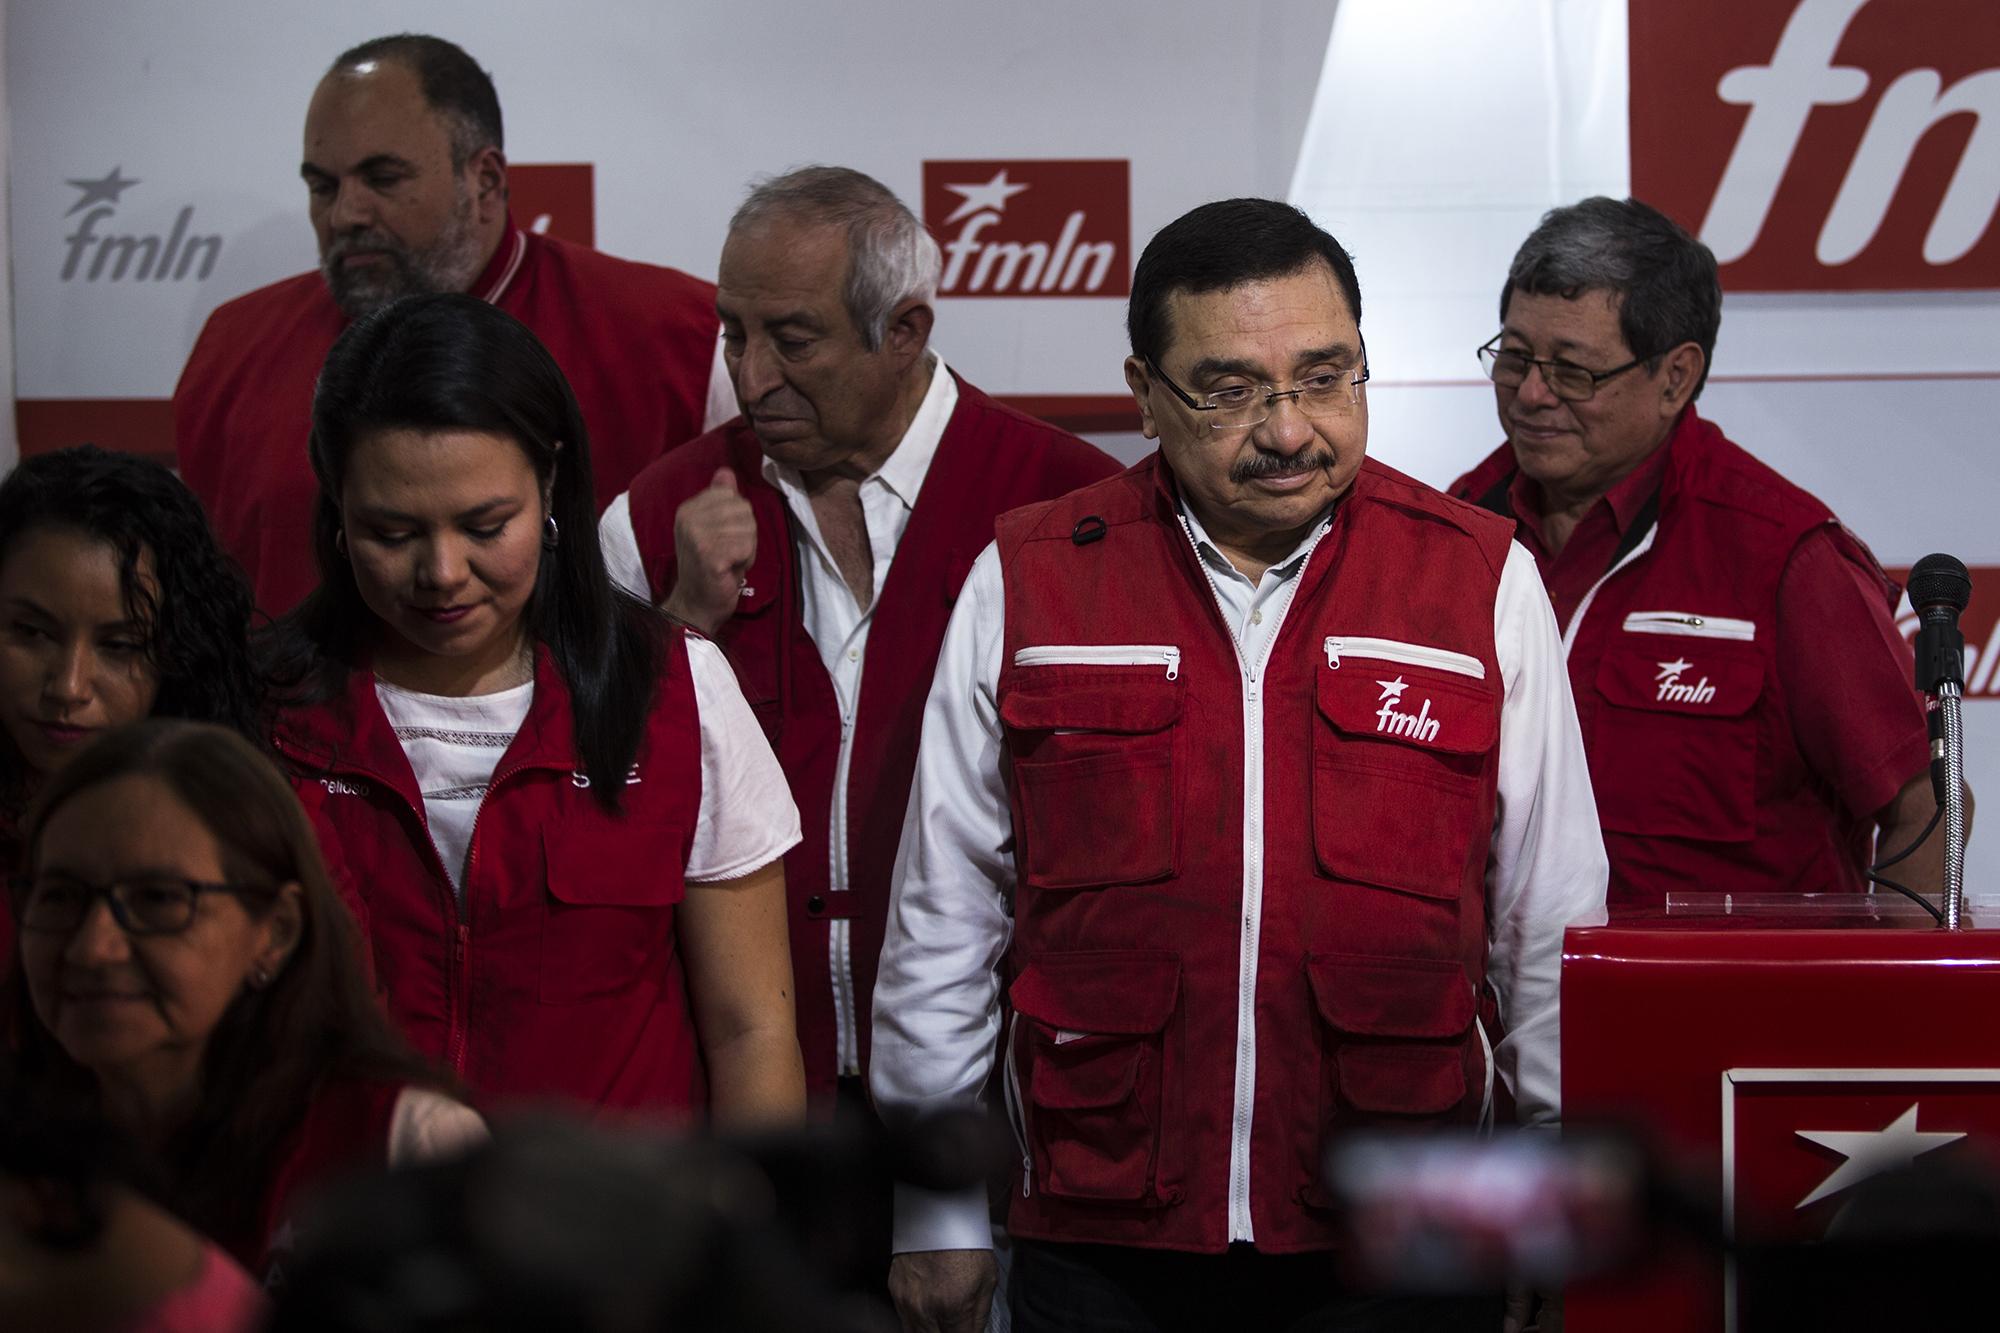 Medardo González, al centro, luego de anunciar el retiro de la cúpula del FMLN y el adelante de elecciones internas. Foto: Víctor Peña.